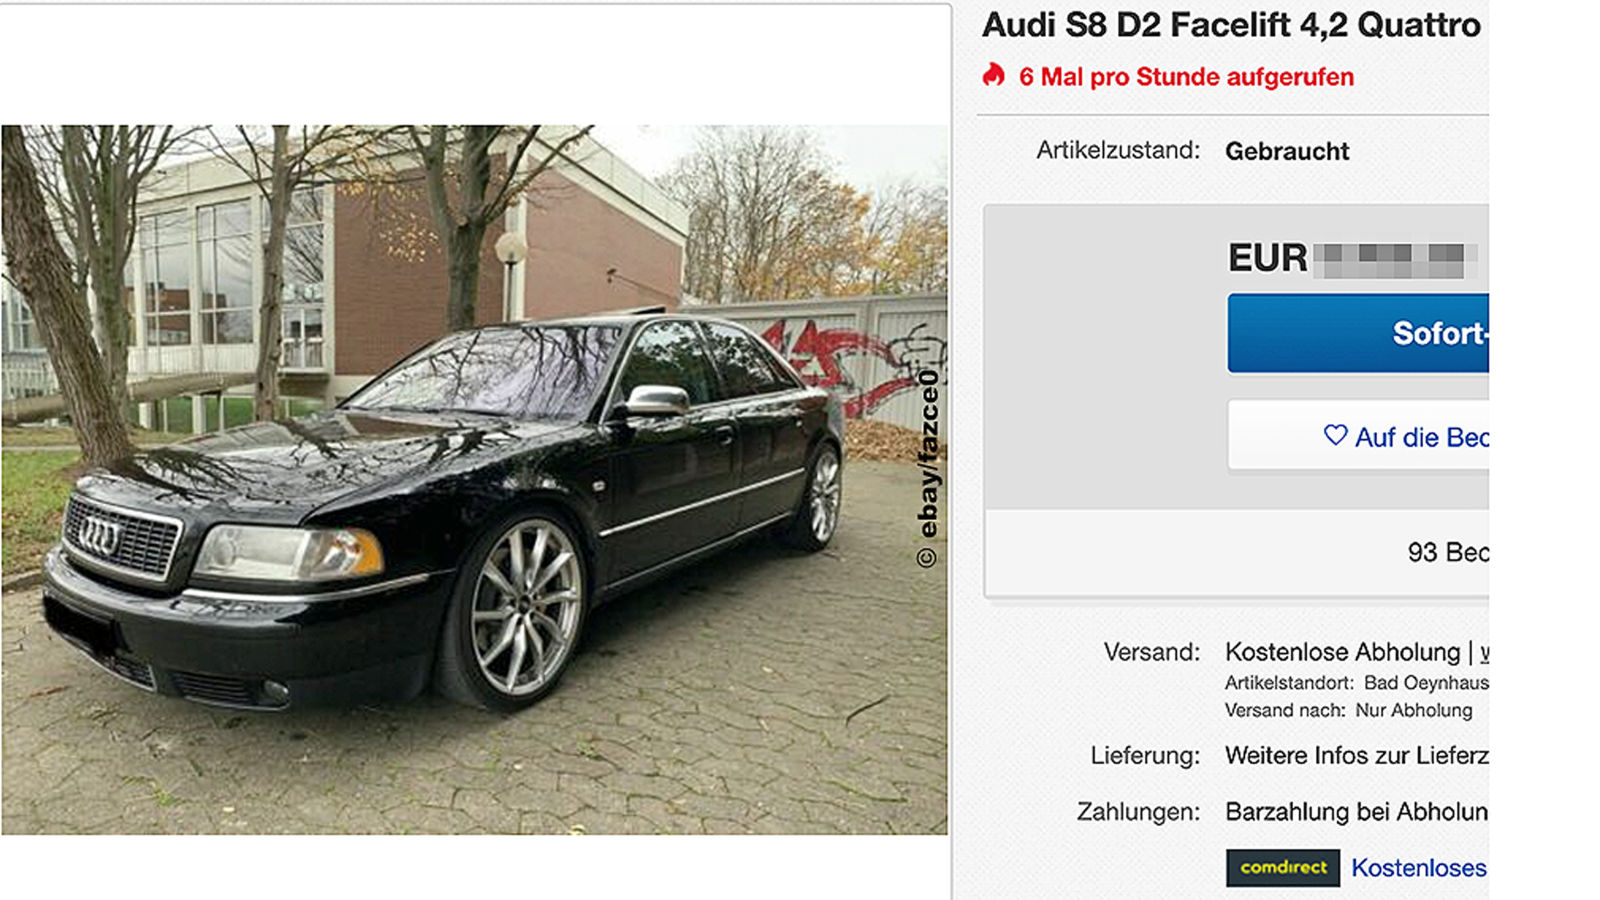 Audi S8 4.2 quattro (2001) gebraucht Preis kaufen